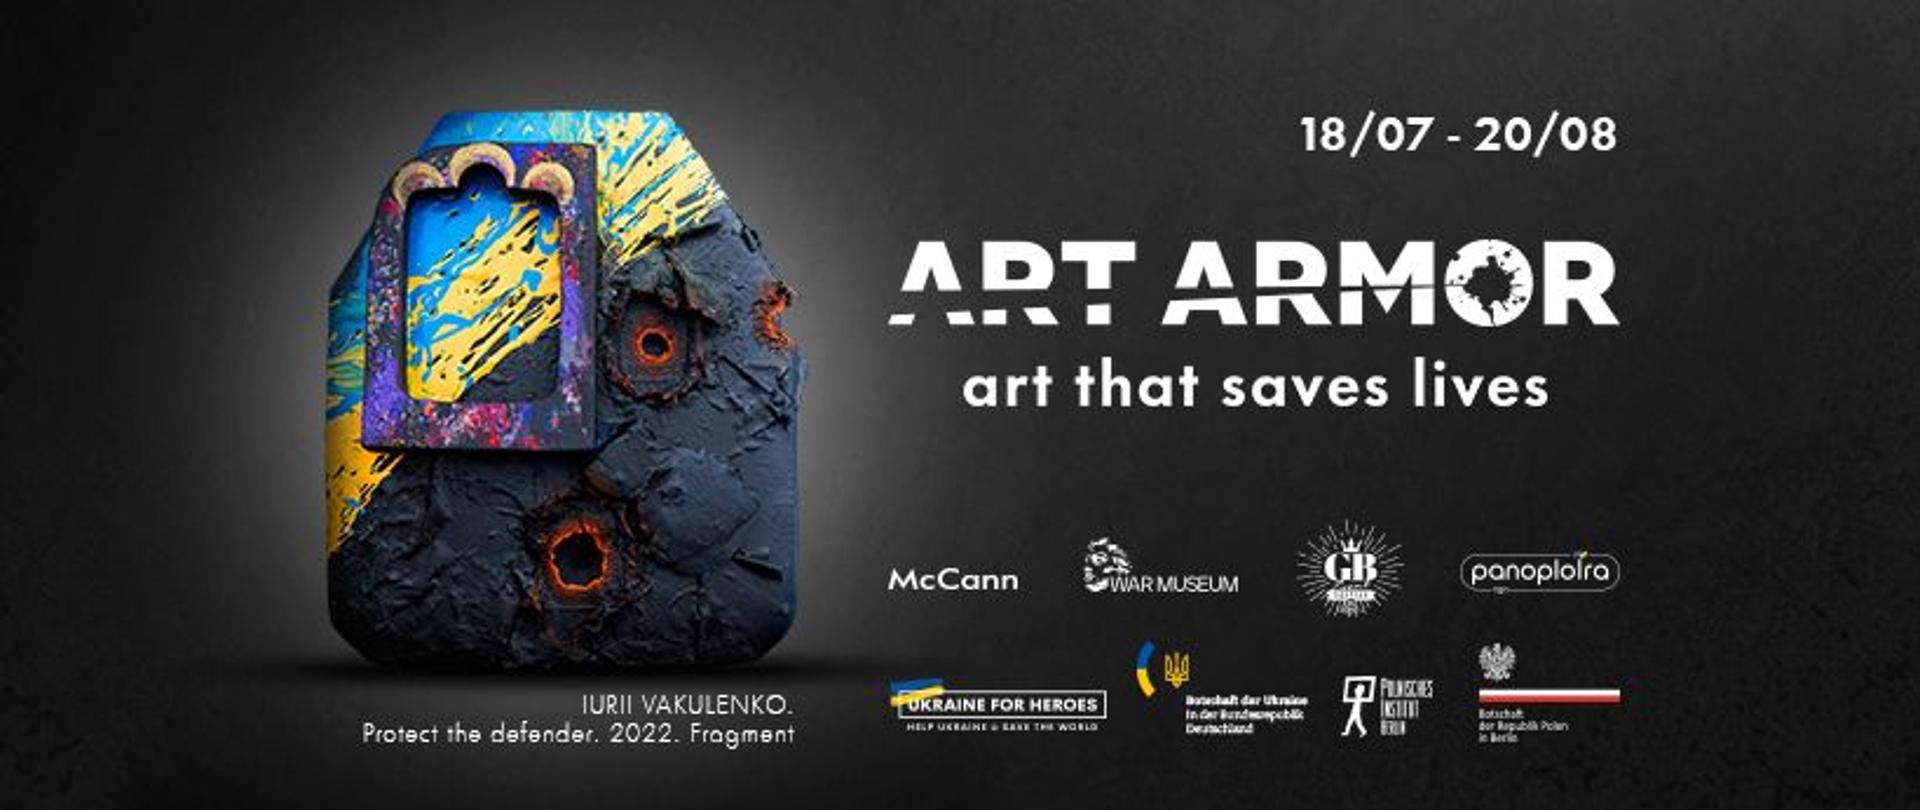 Kunst, die Leben rettet - die ukrainische ArtArmor-Ausstellung